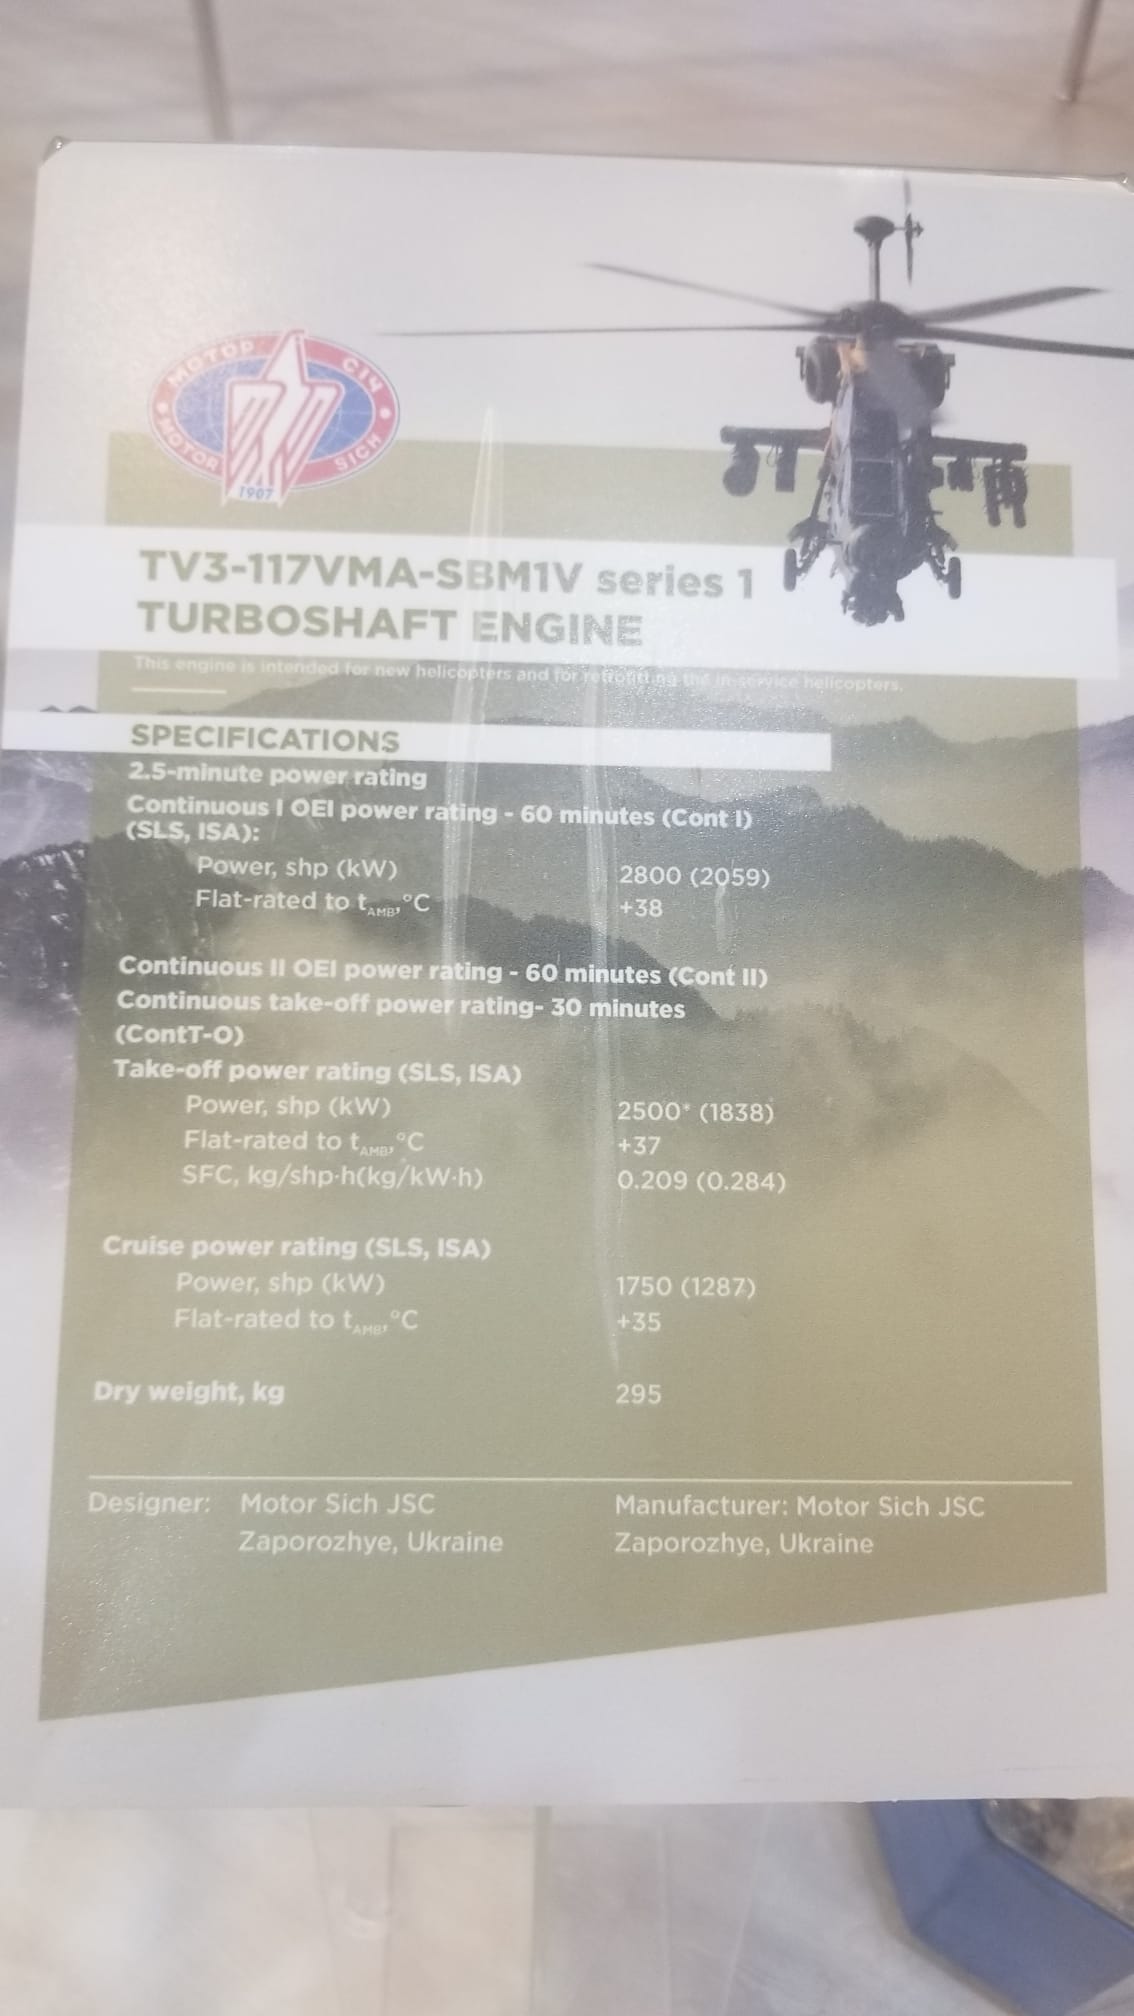 IDEF 2021, запорізький двигун ТВ3-117ВМА-СБМ1В 1 серії виробництва компанії